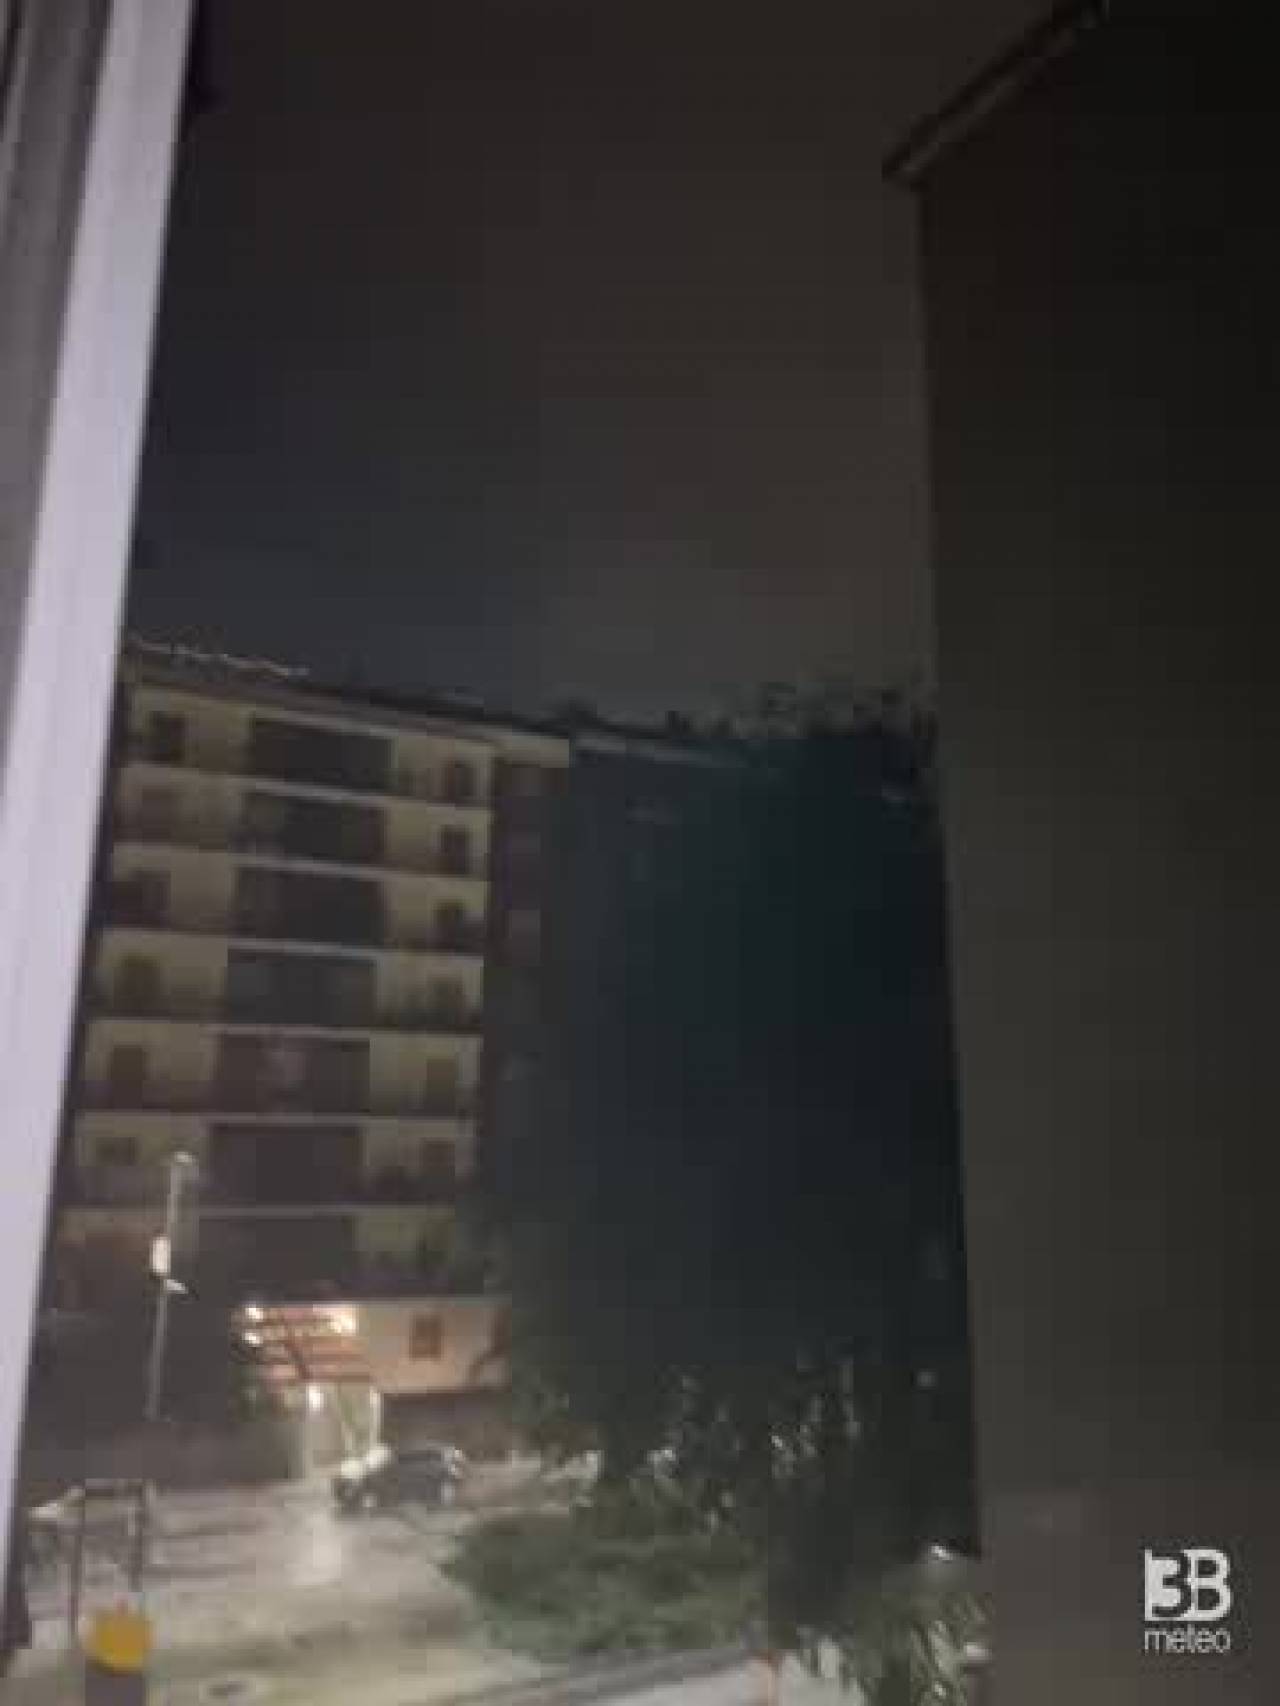 Cronaca meteo. Lombardia, Milano. Forte temporale con grandine nella notte. Strade ricoperte di bianco - Video